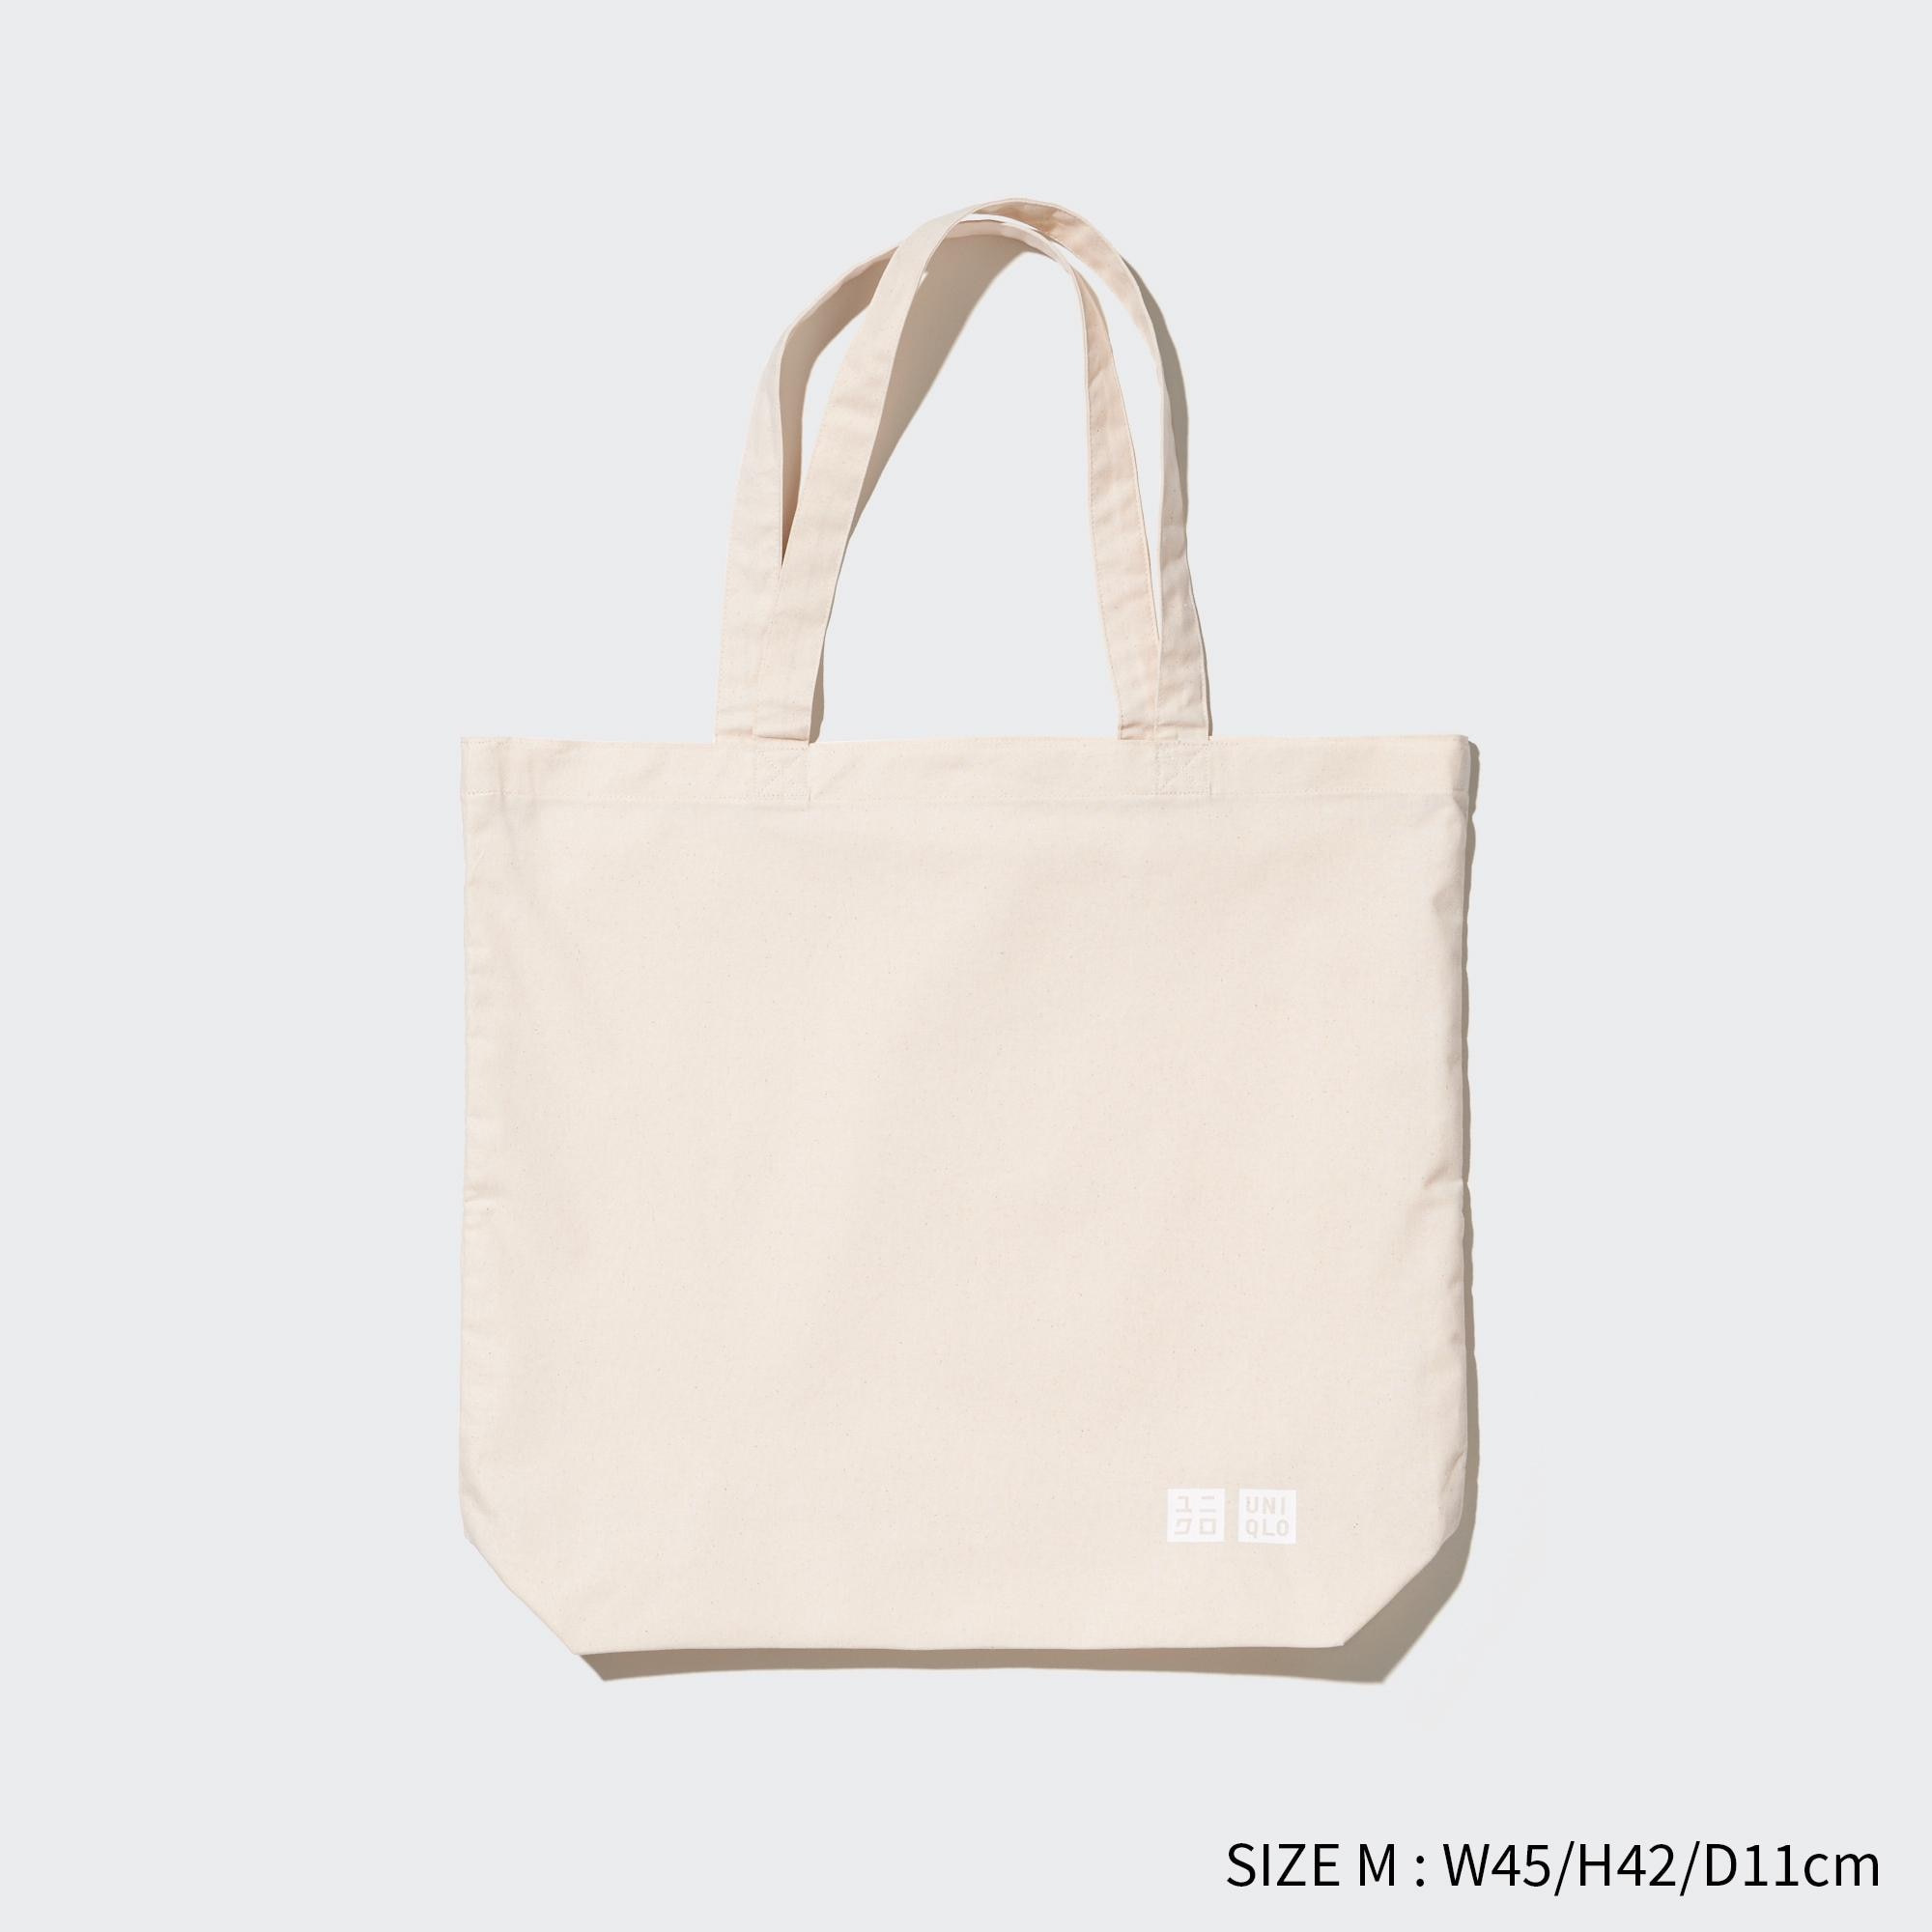 Reusable Bag (Cotton)